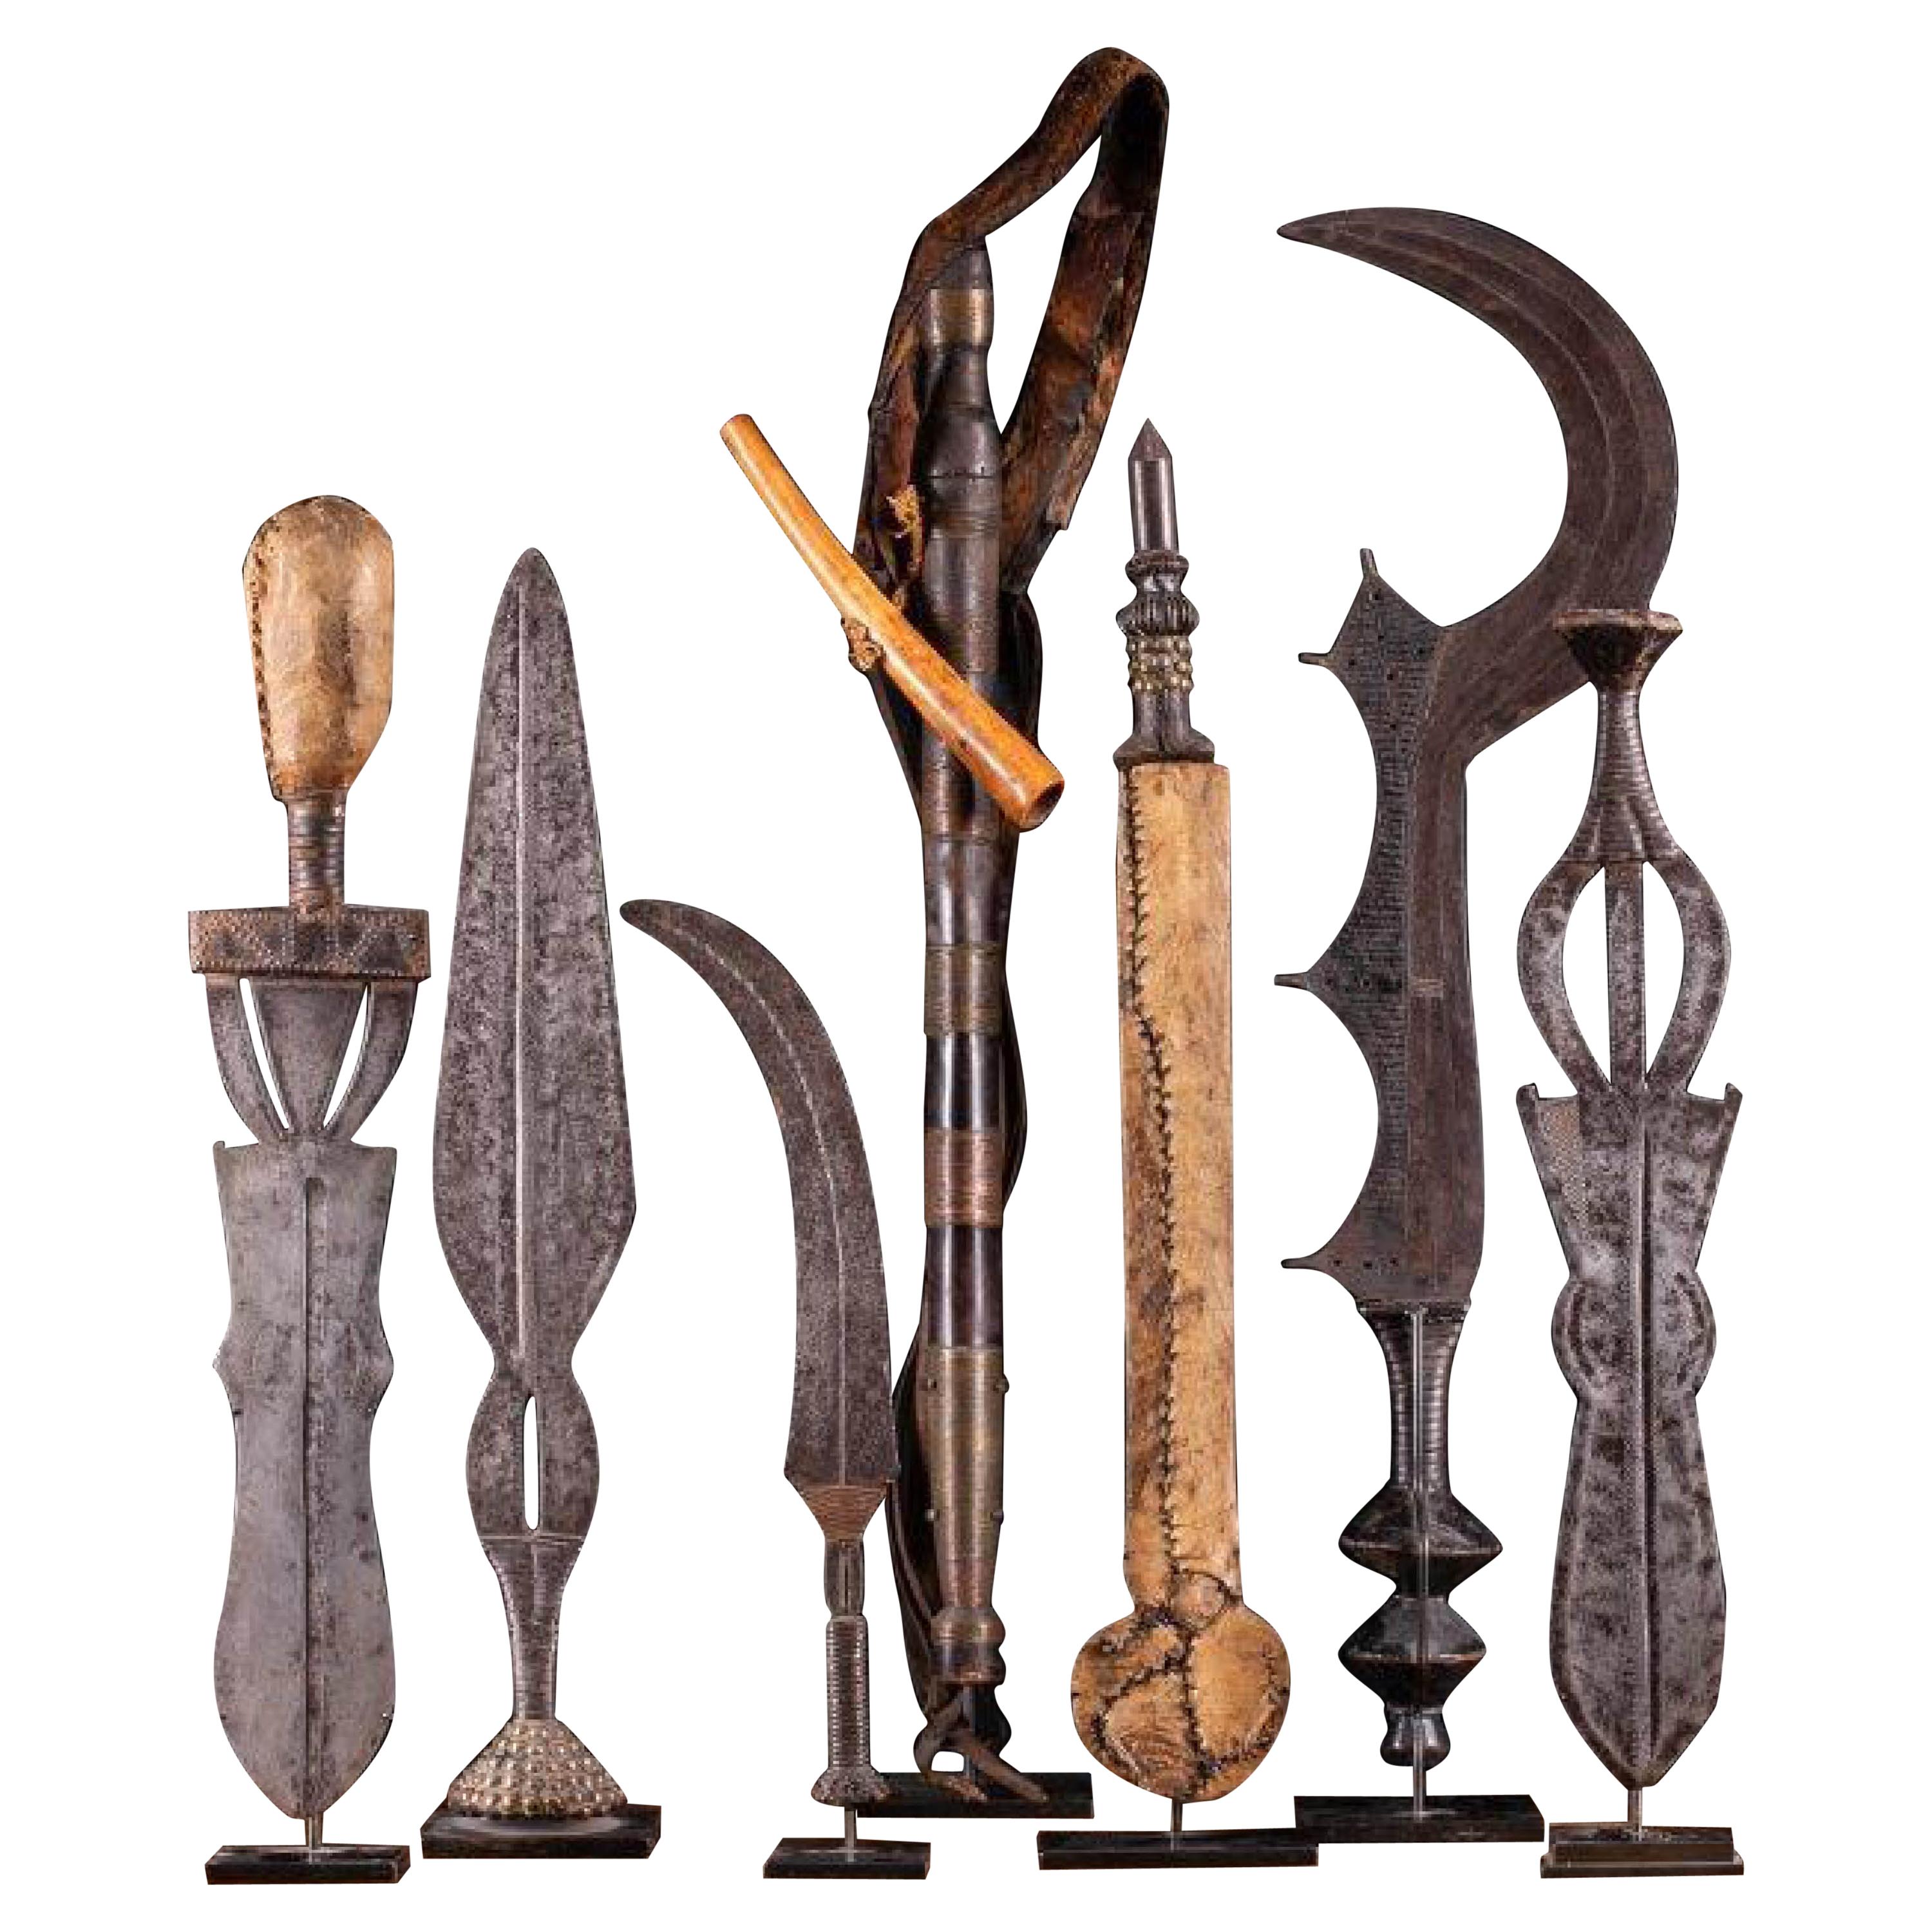 Auswahl an authentischen Kongo-Messern